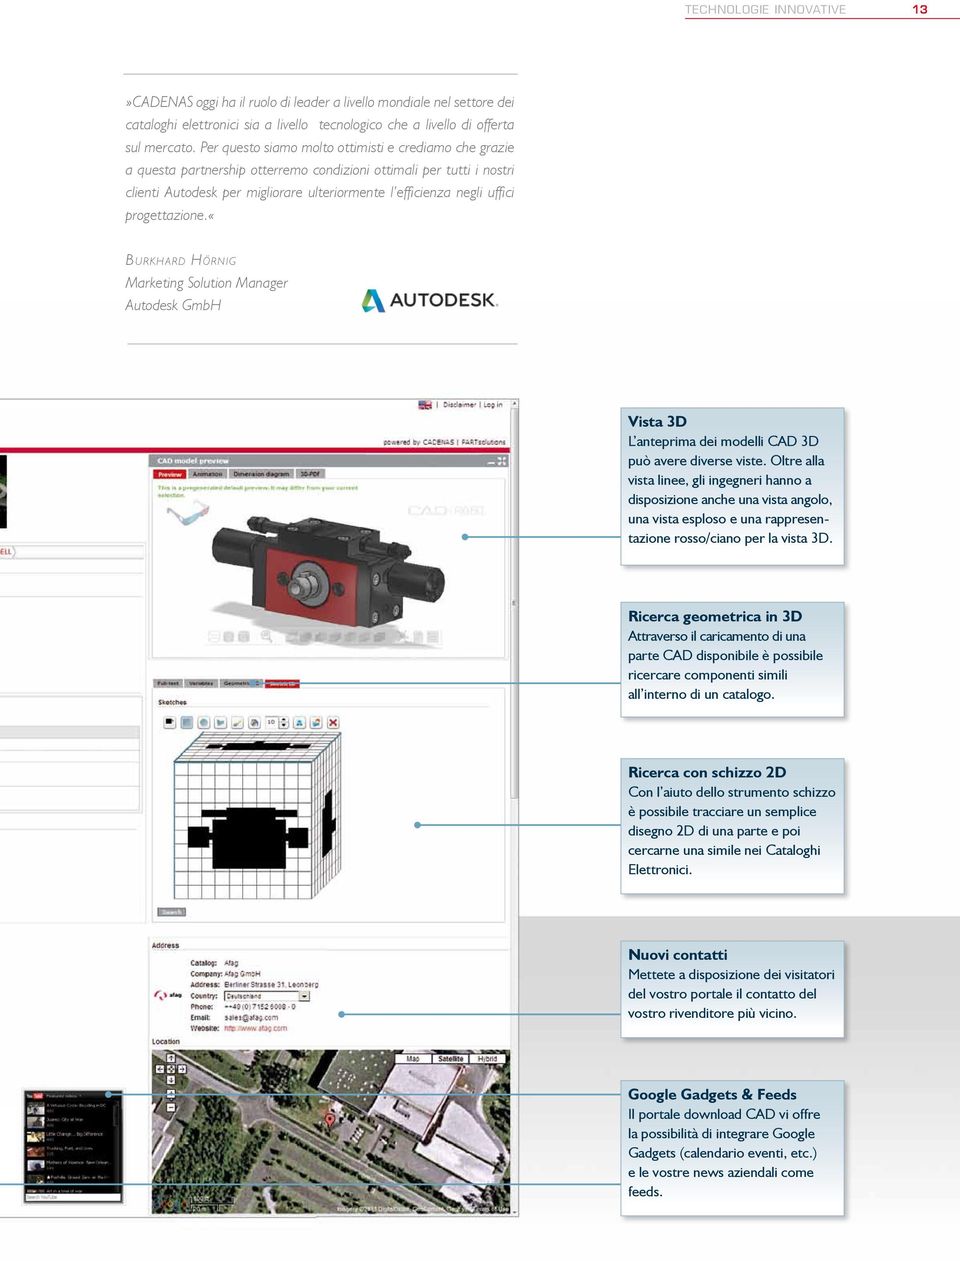 progettazione.«burkhard Hörnig Marketing Solution Manager Autodesk GmbH Vista 3D L anteprima dei modelli CAD 3D può avere diverse viste.